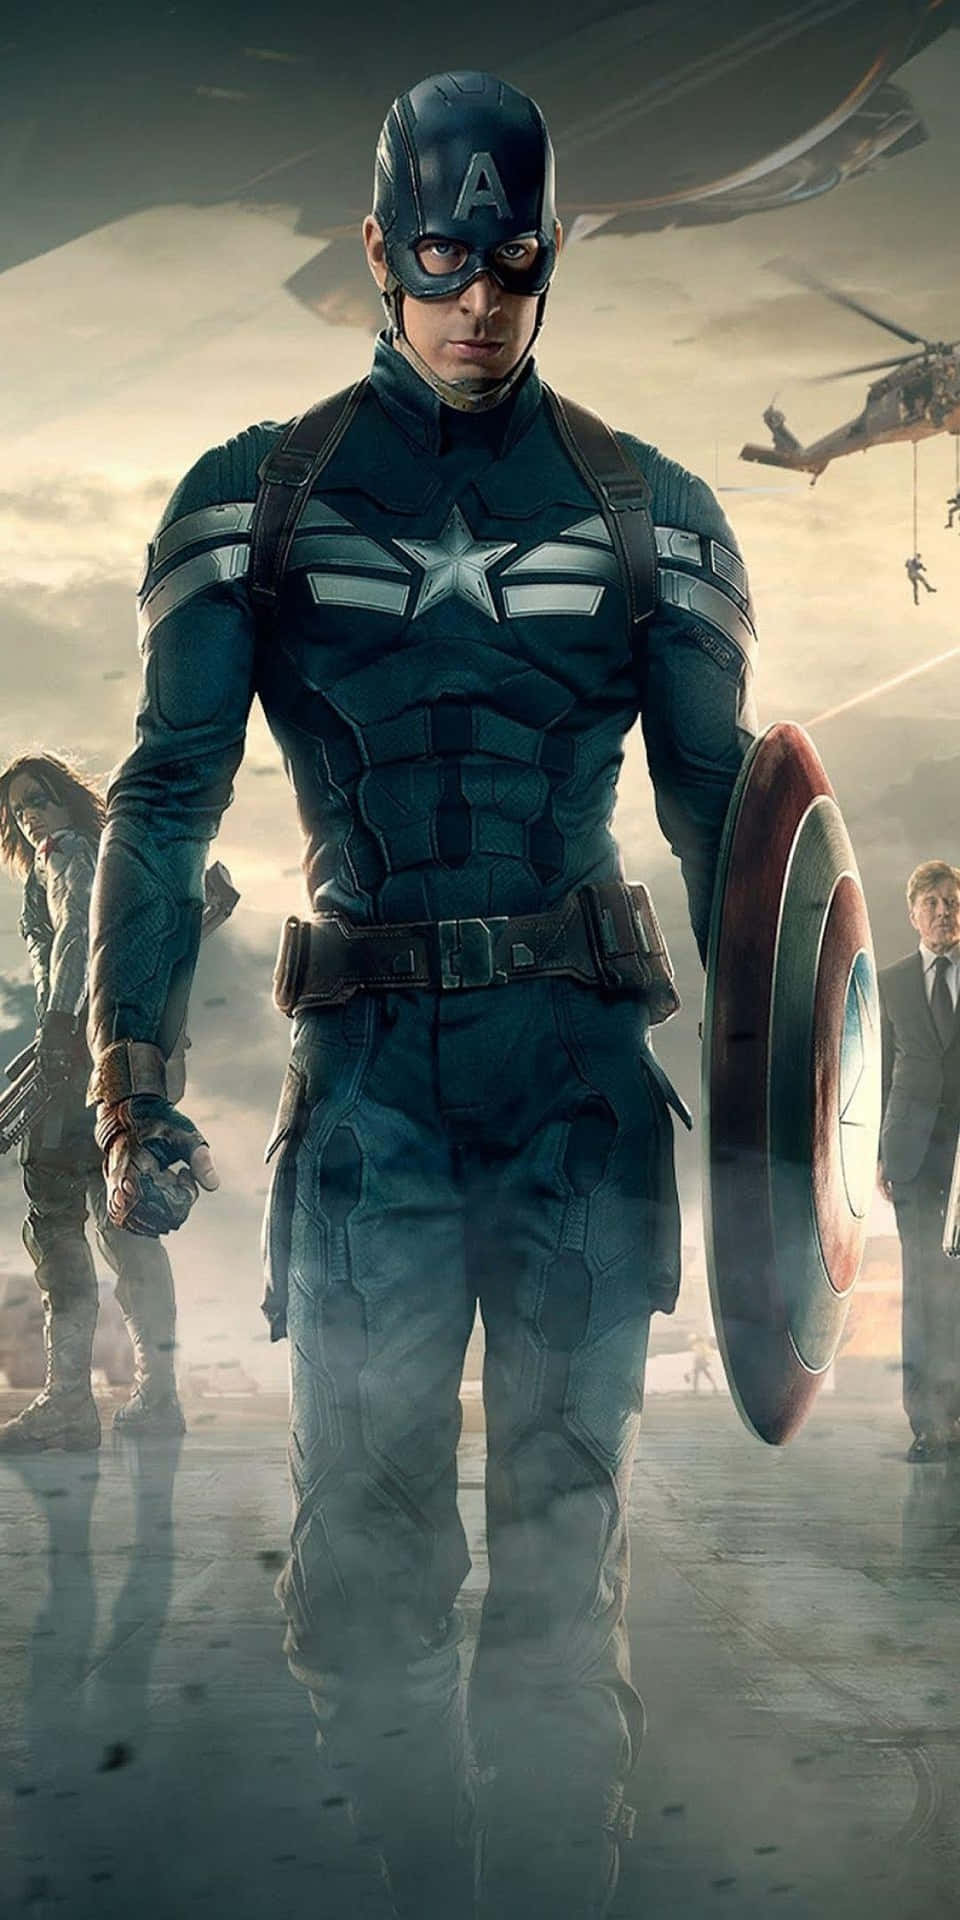 Pixel3 Bakgrundsbild Med Captain America Från The Winter Soldier.